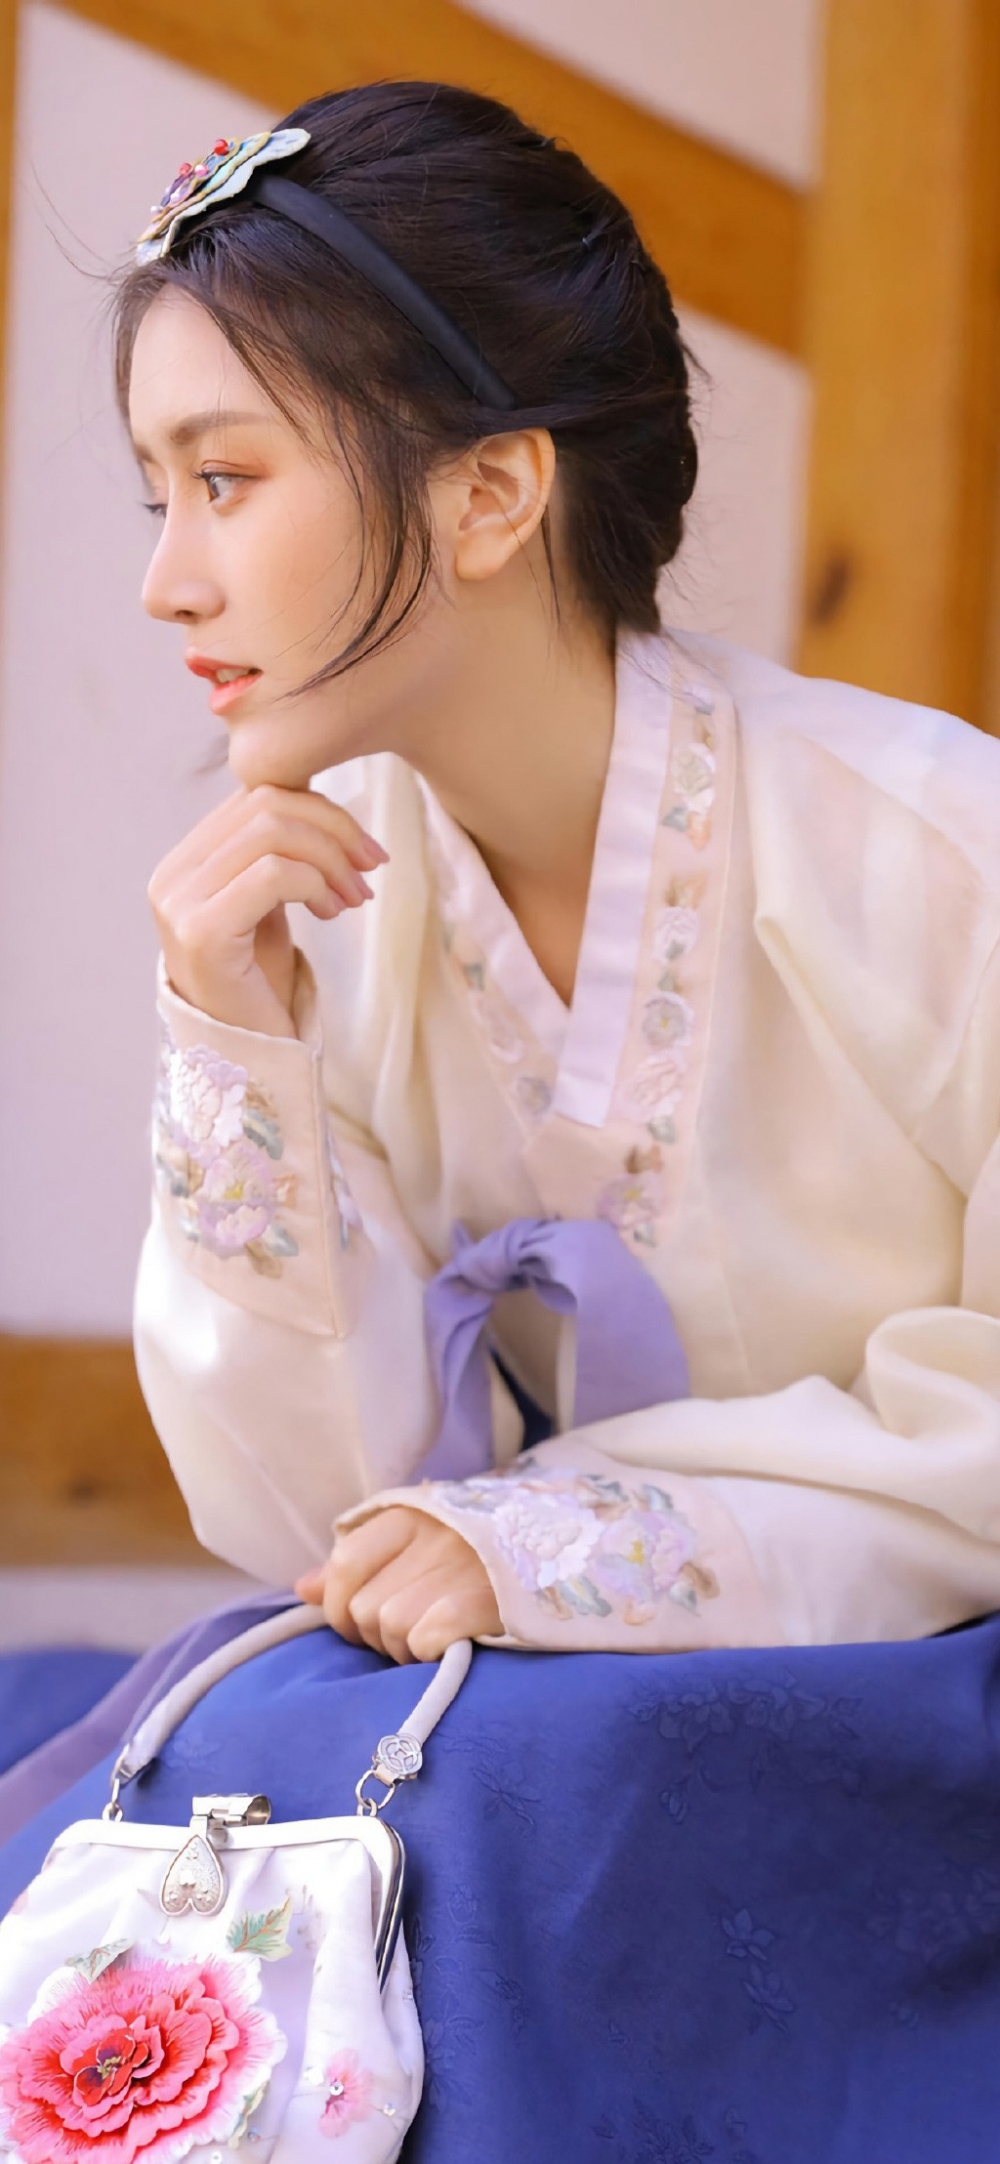 穿着汉服的日韩美女清美美的图片高清